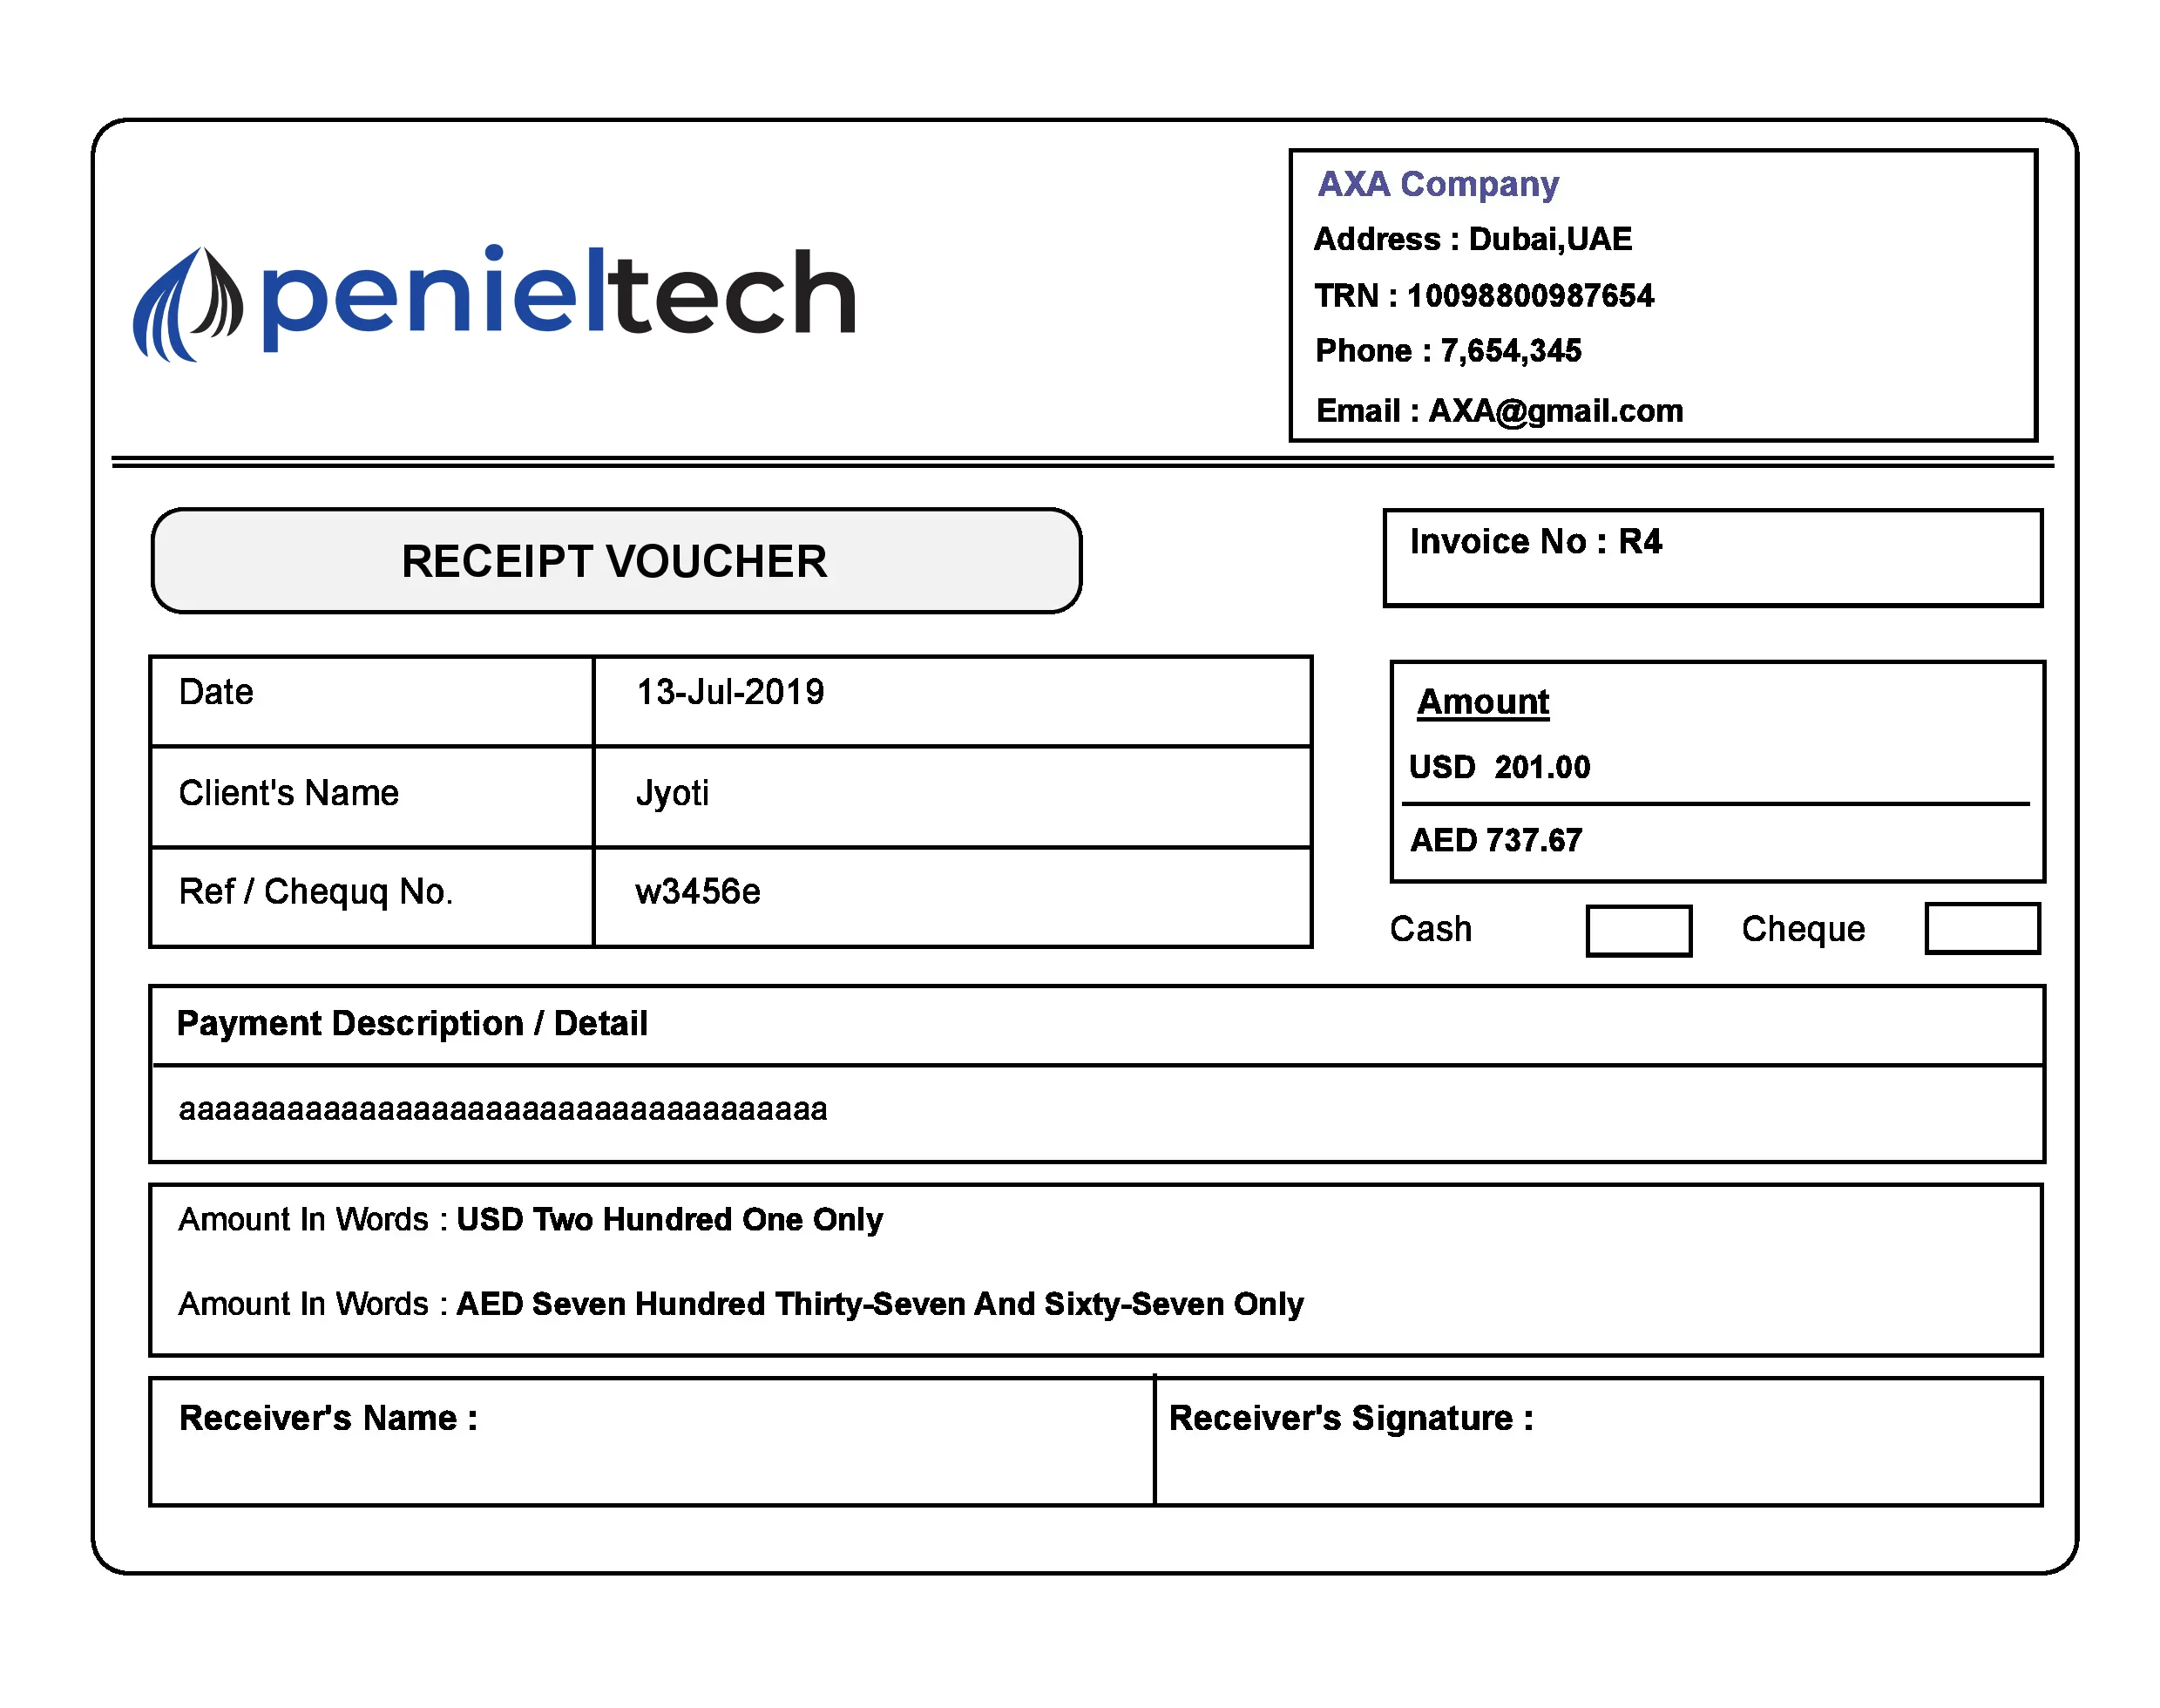 QuickBooks receipt voucher customization Penieltech